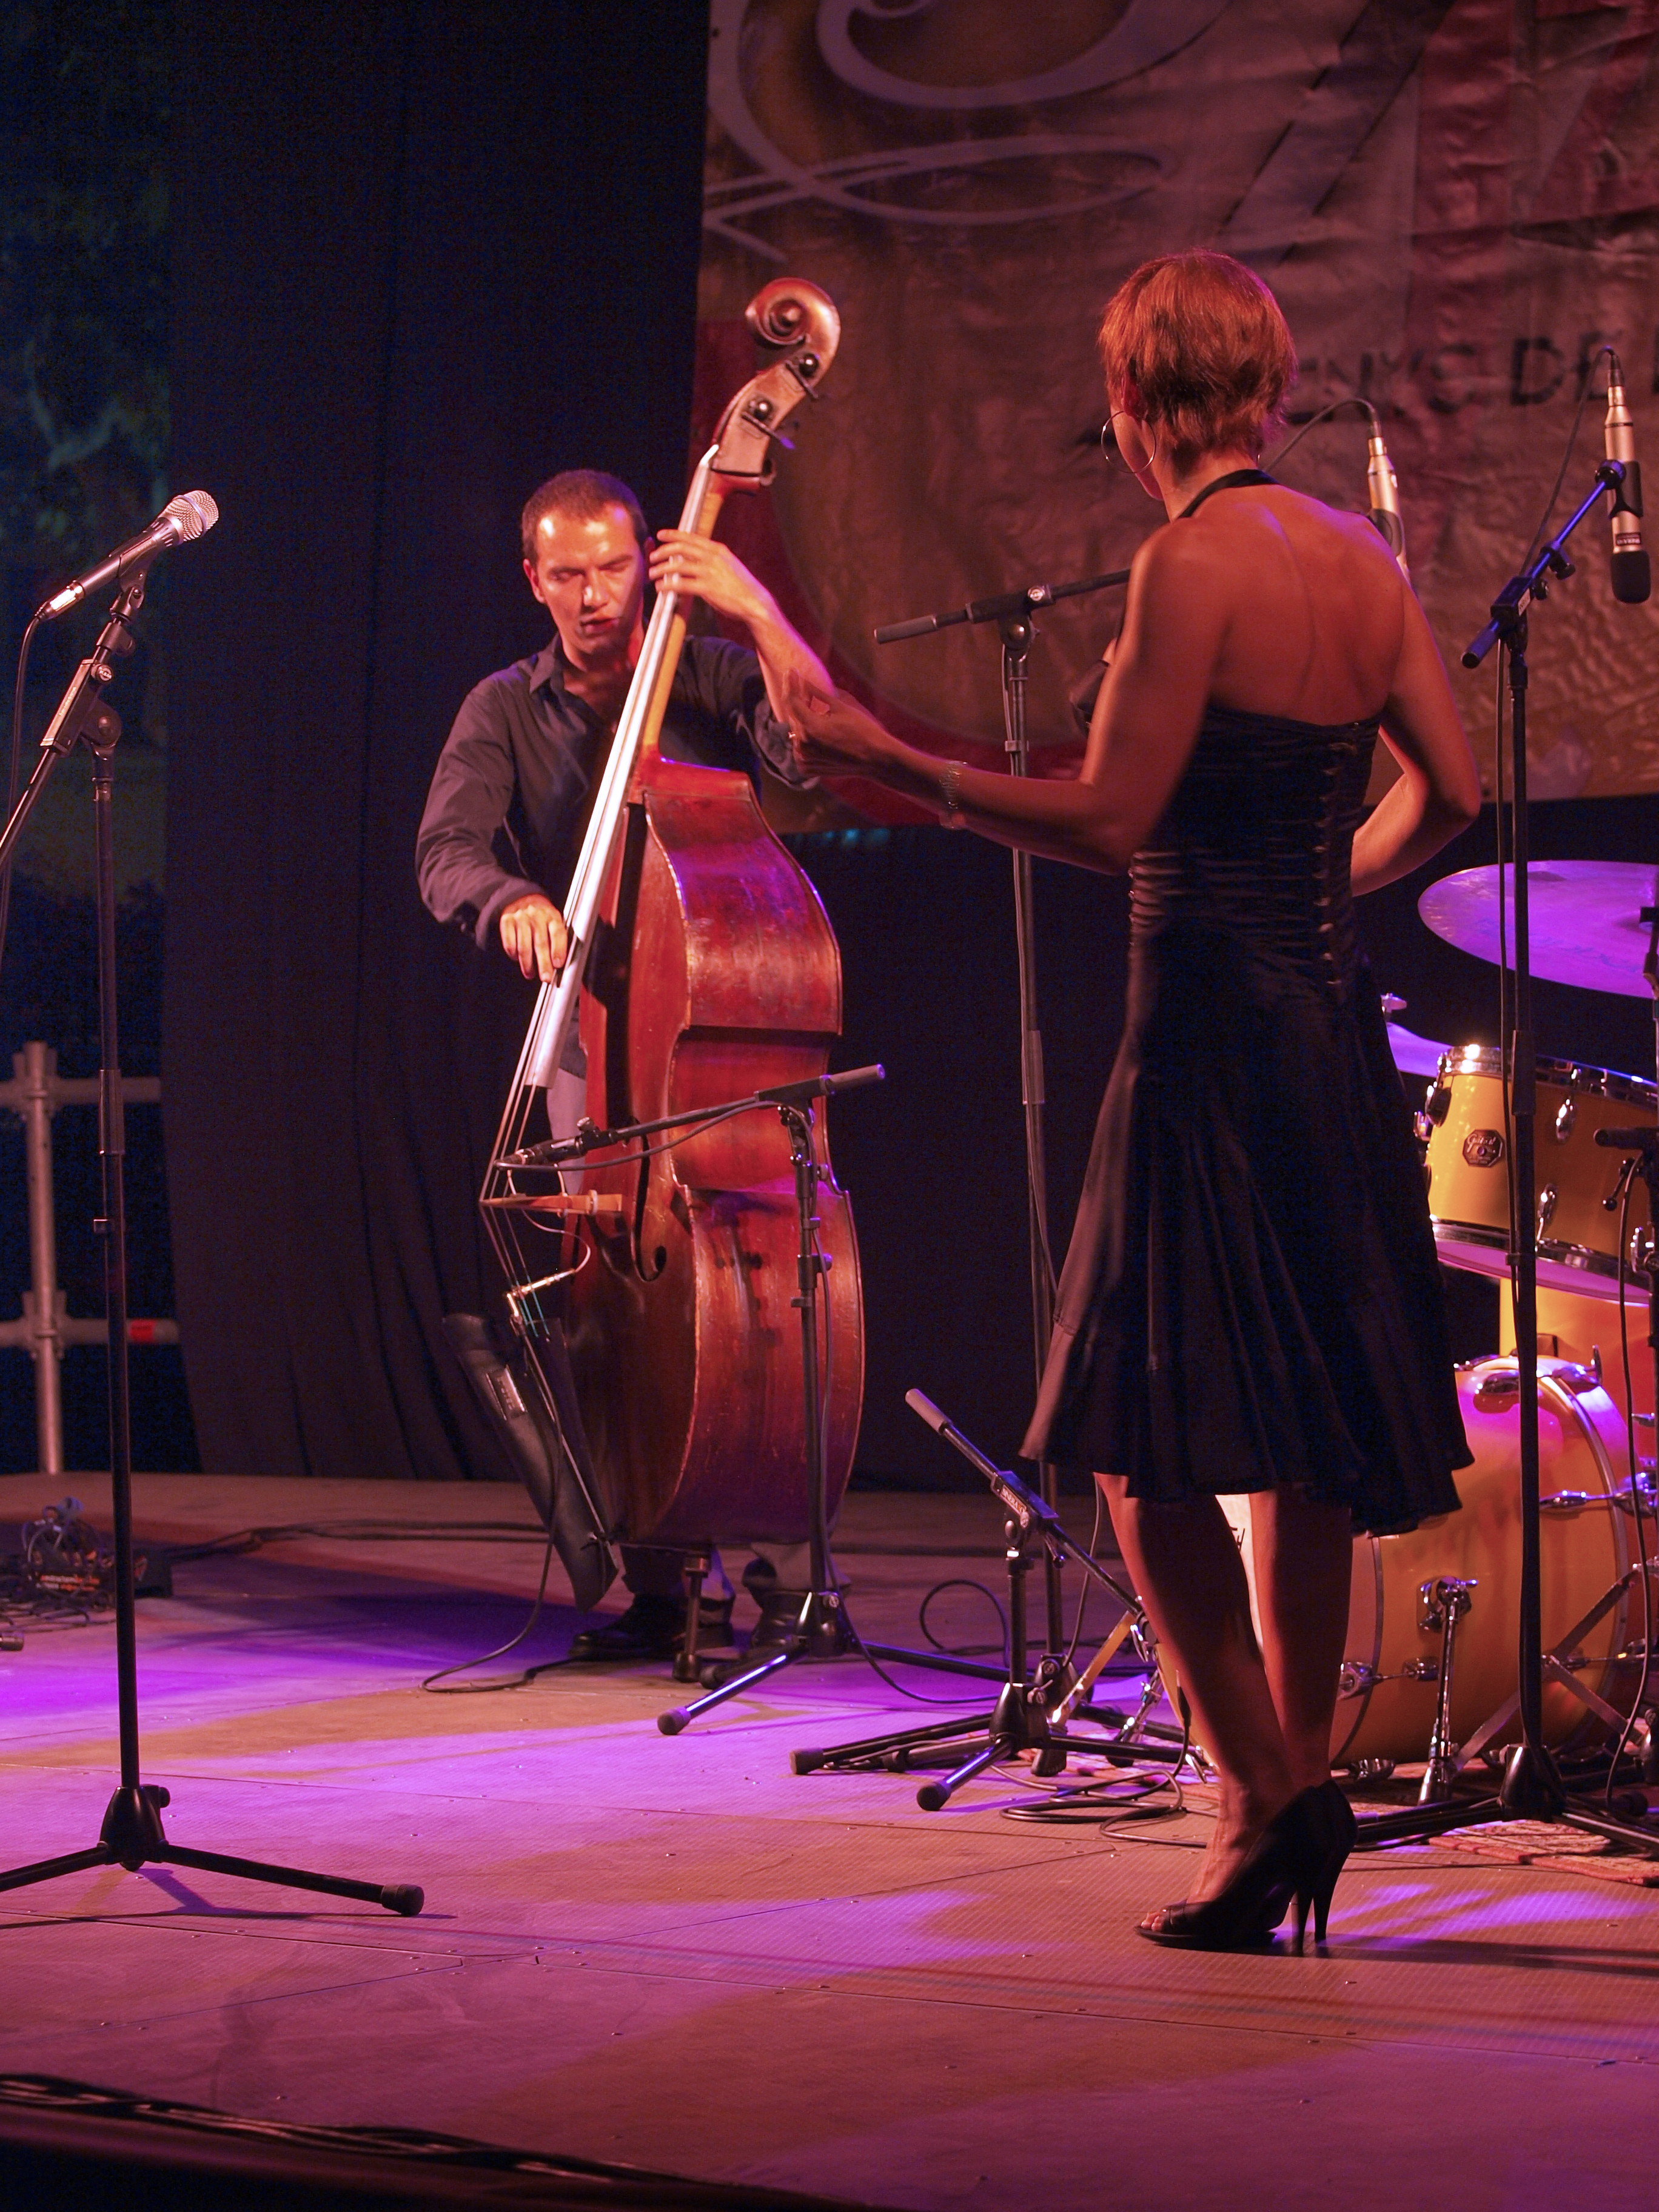 Imatges del 18è Festival de Jazz d'Arenys de Mar - 2009 - Foto 88268133